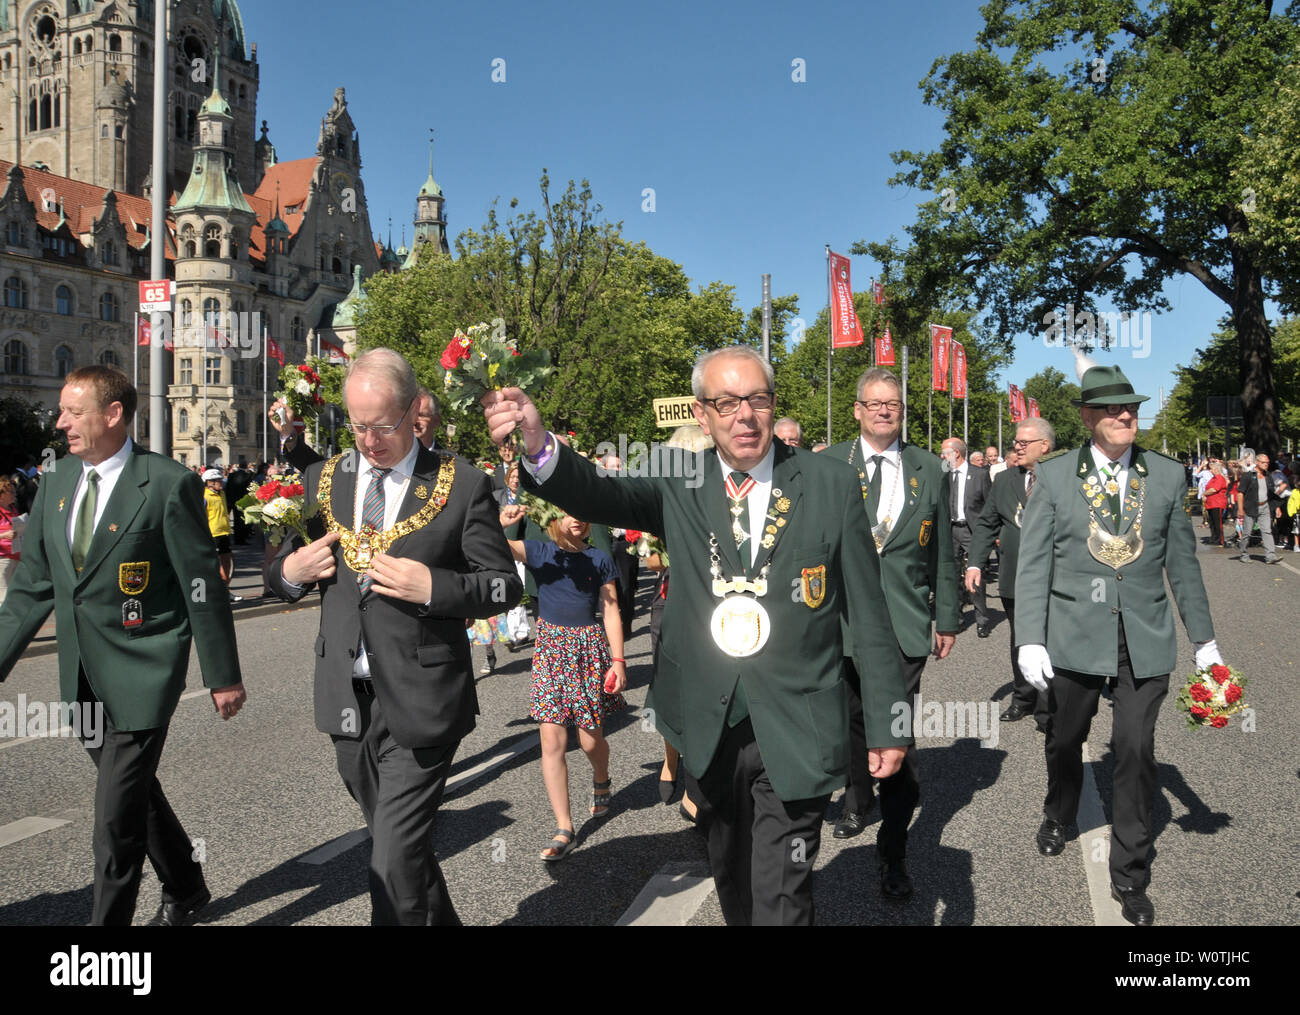 Schützenausmarsch in Hannover am 1. Juli 2018 Stock Photo